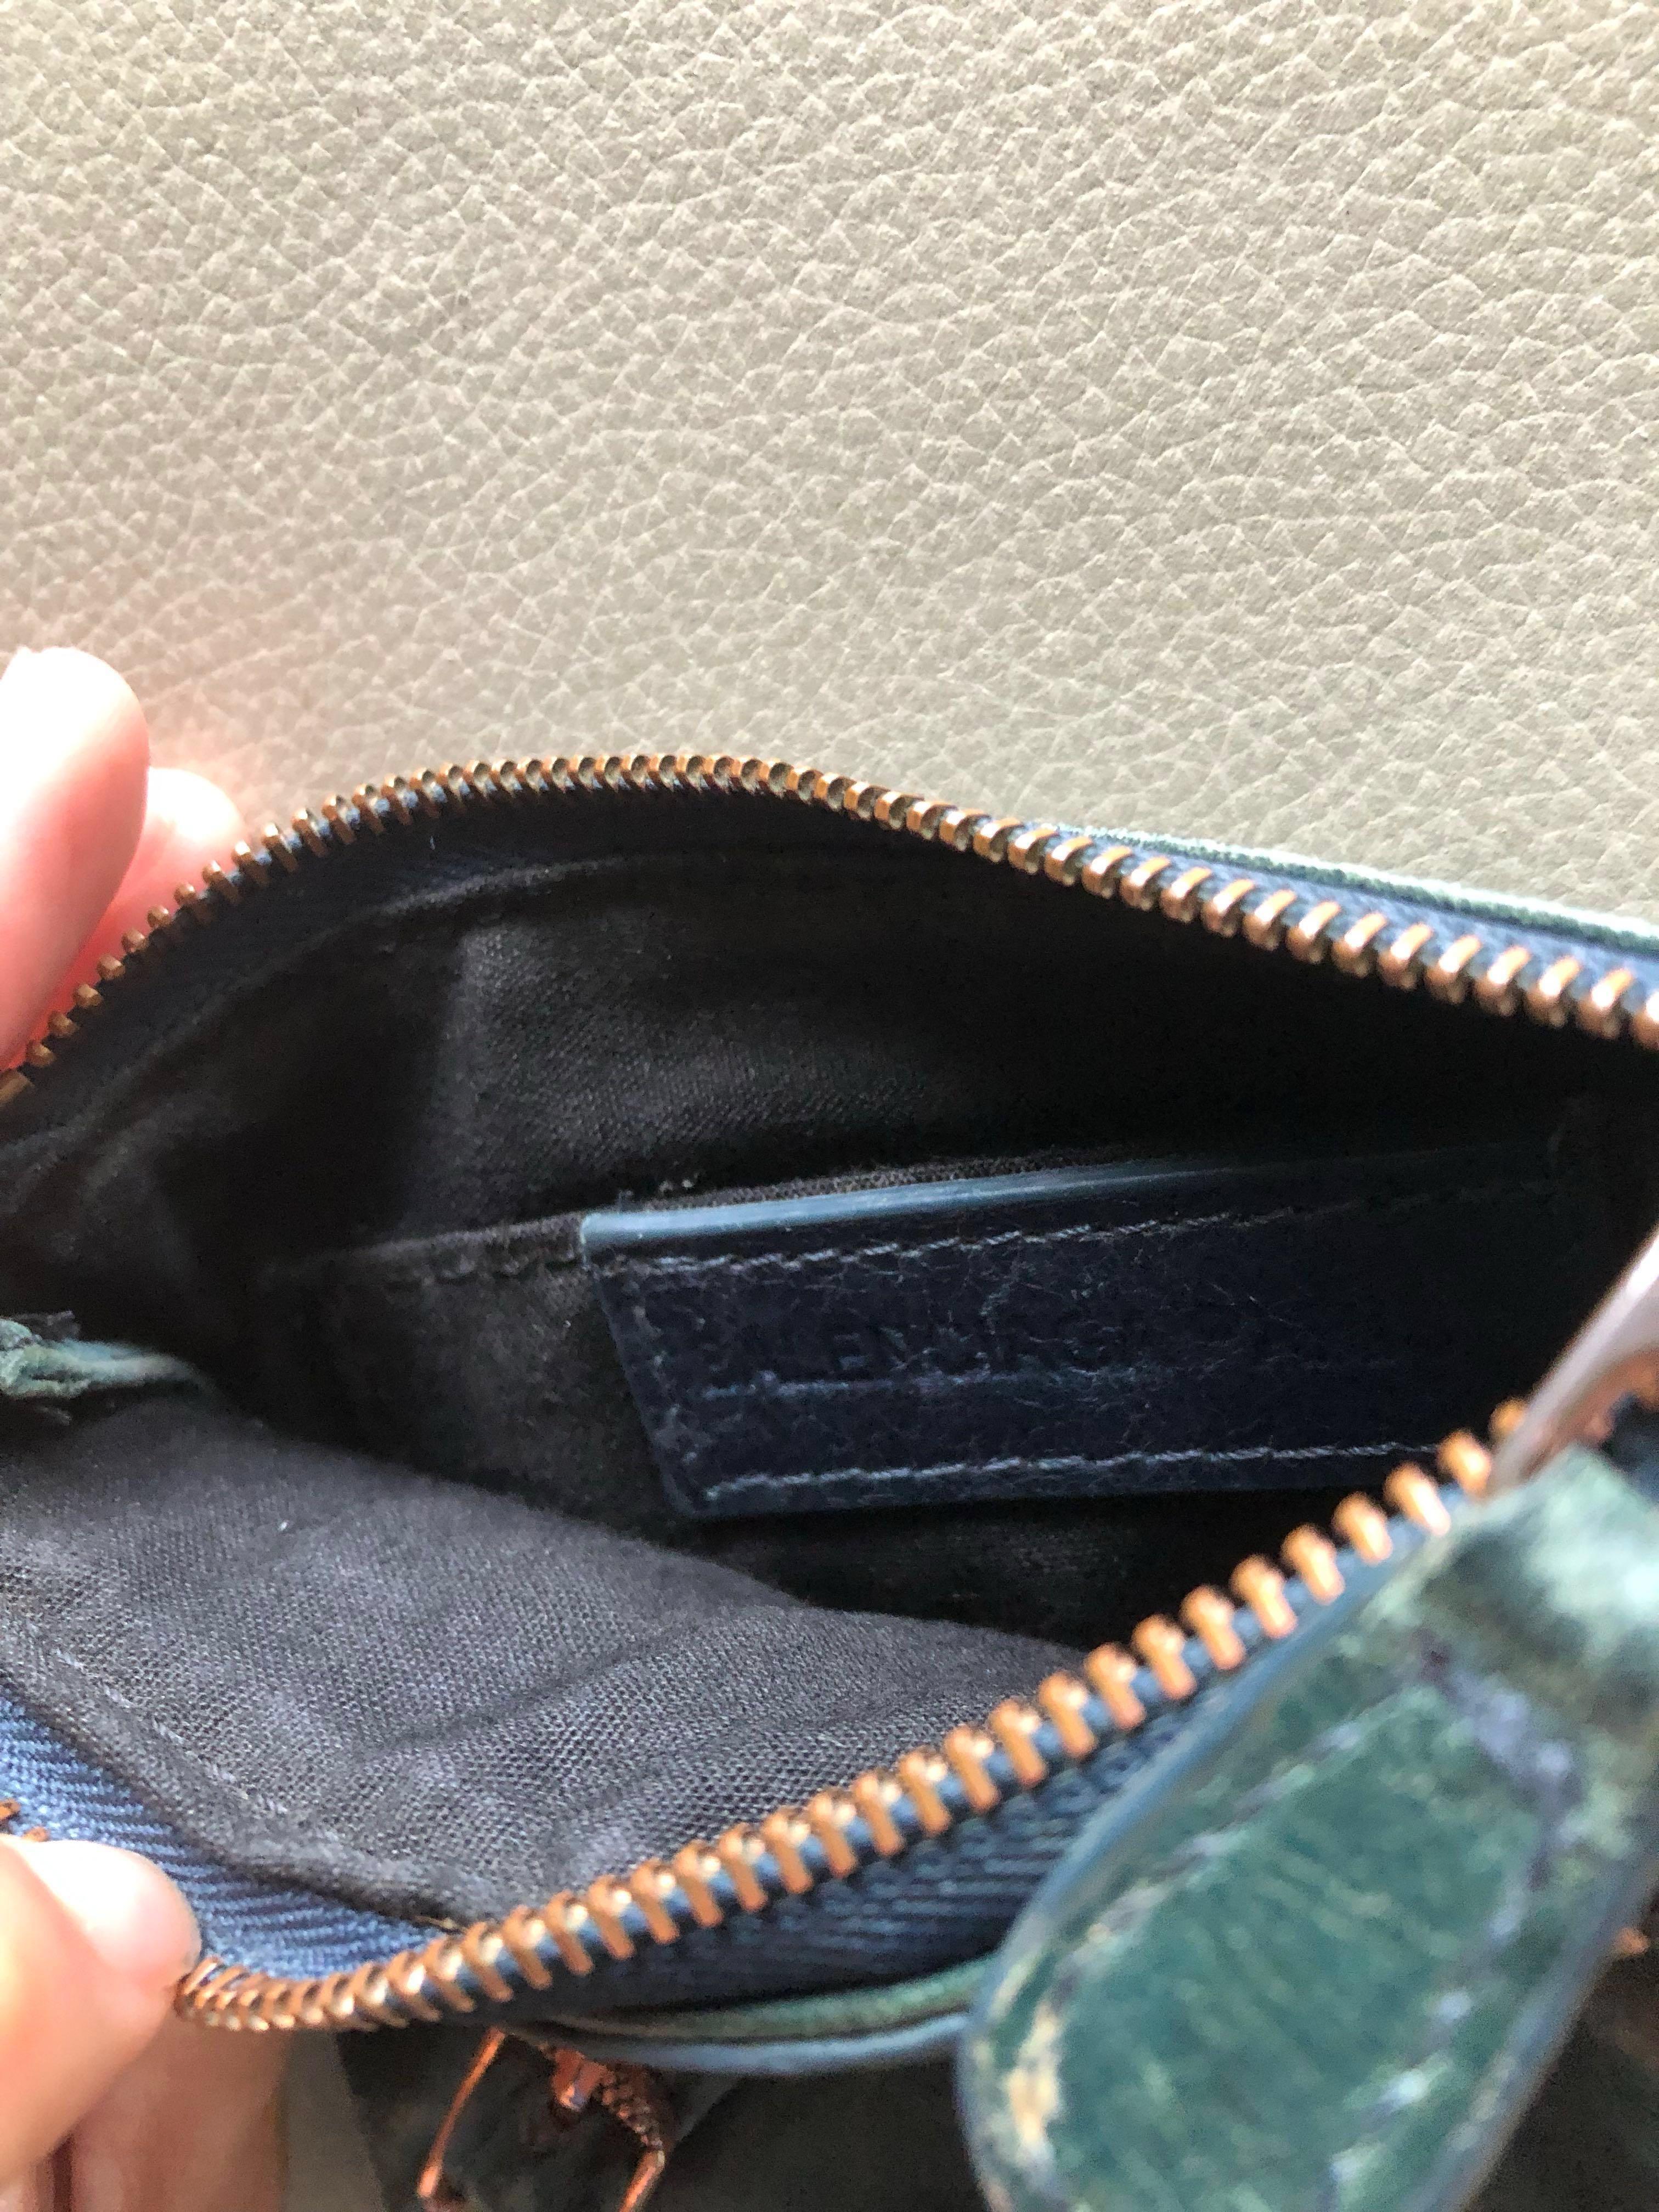 Balenciaga Leather Coin Purse Pouch Wallet